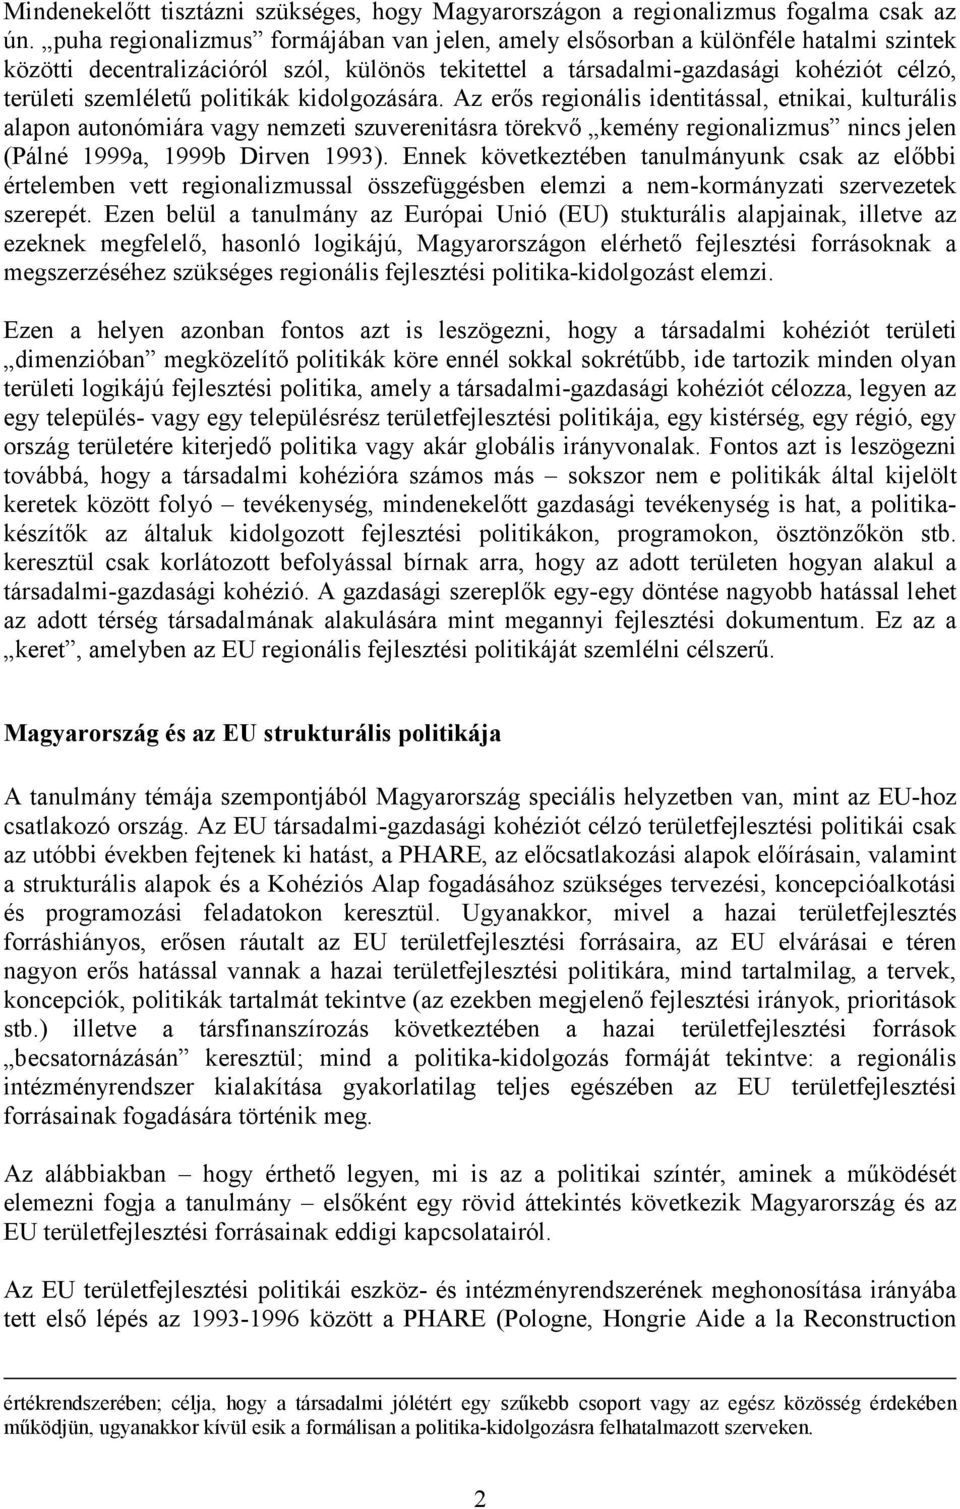 politikák kidolgozására. Az erıs regionális identitással, etnikai, kulturális alapon autonómiára vagy nemzeti szuverenitásra törekvı kemény regionalizmus nincs jelen (Pálné 1999a, 1999b Dirven 1993).